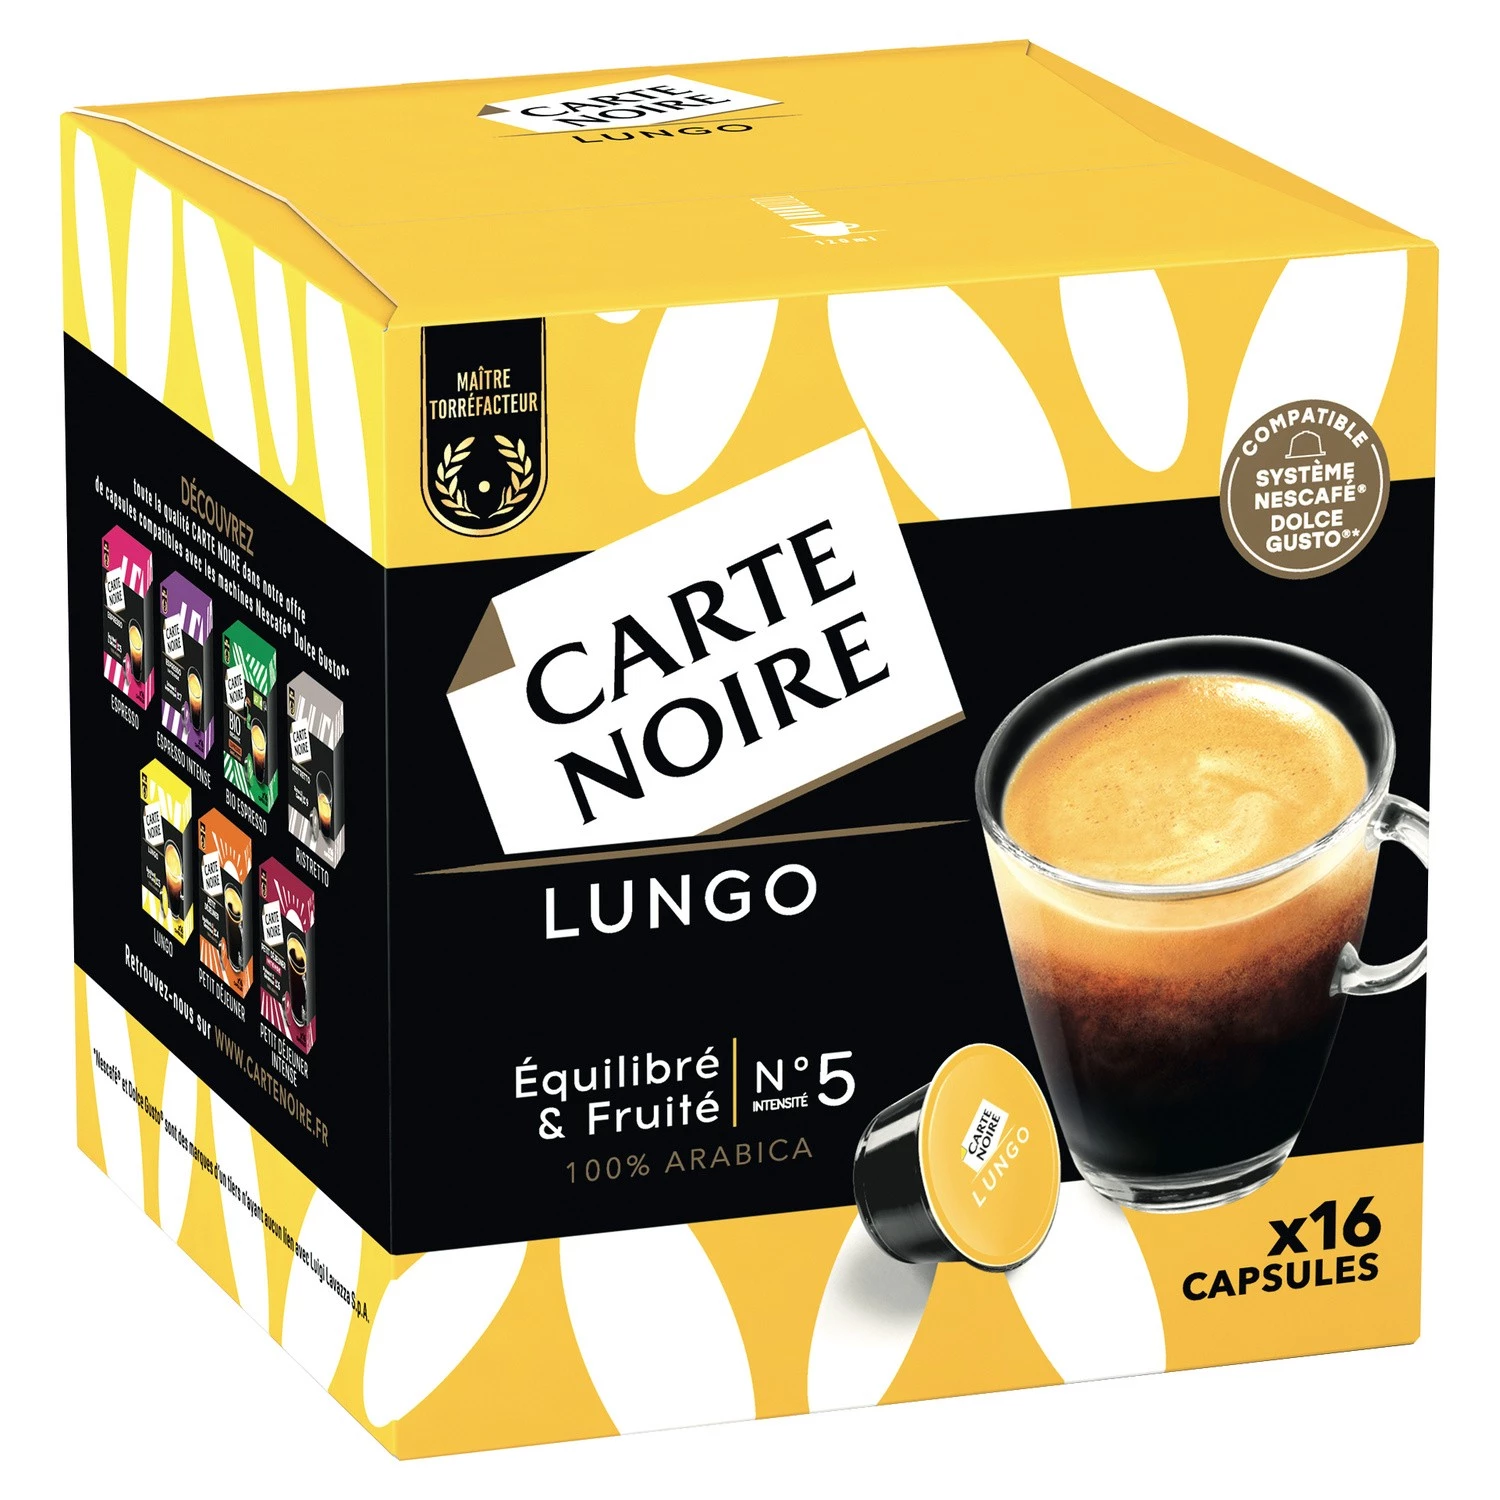 Viên nang Café lungo n°5 x16 viên 128g - CARTE NOIRE